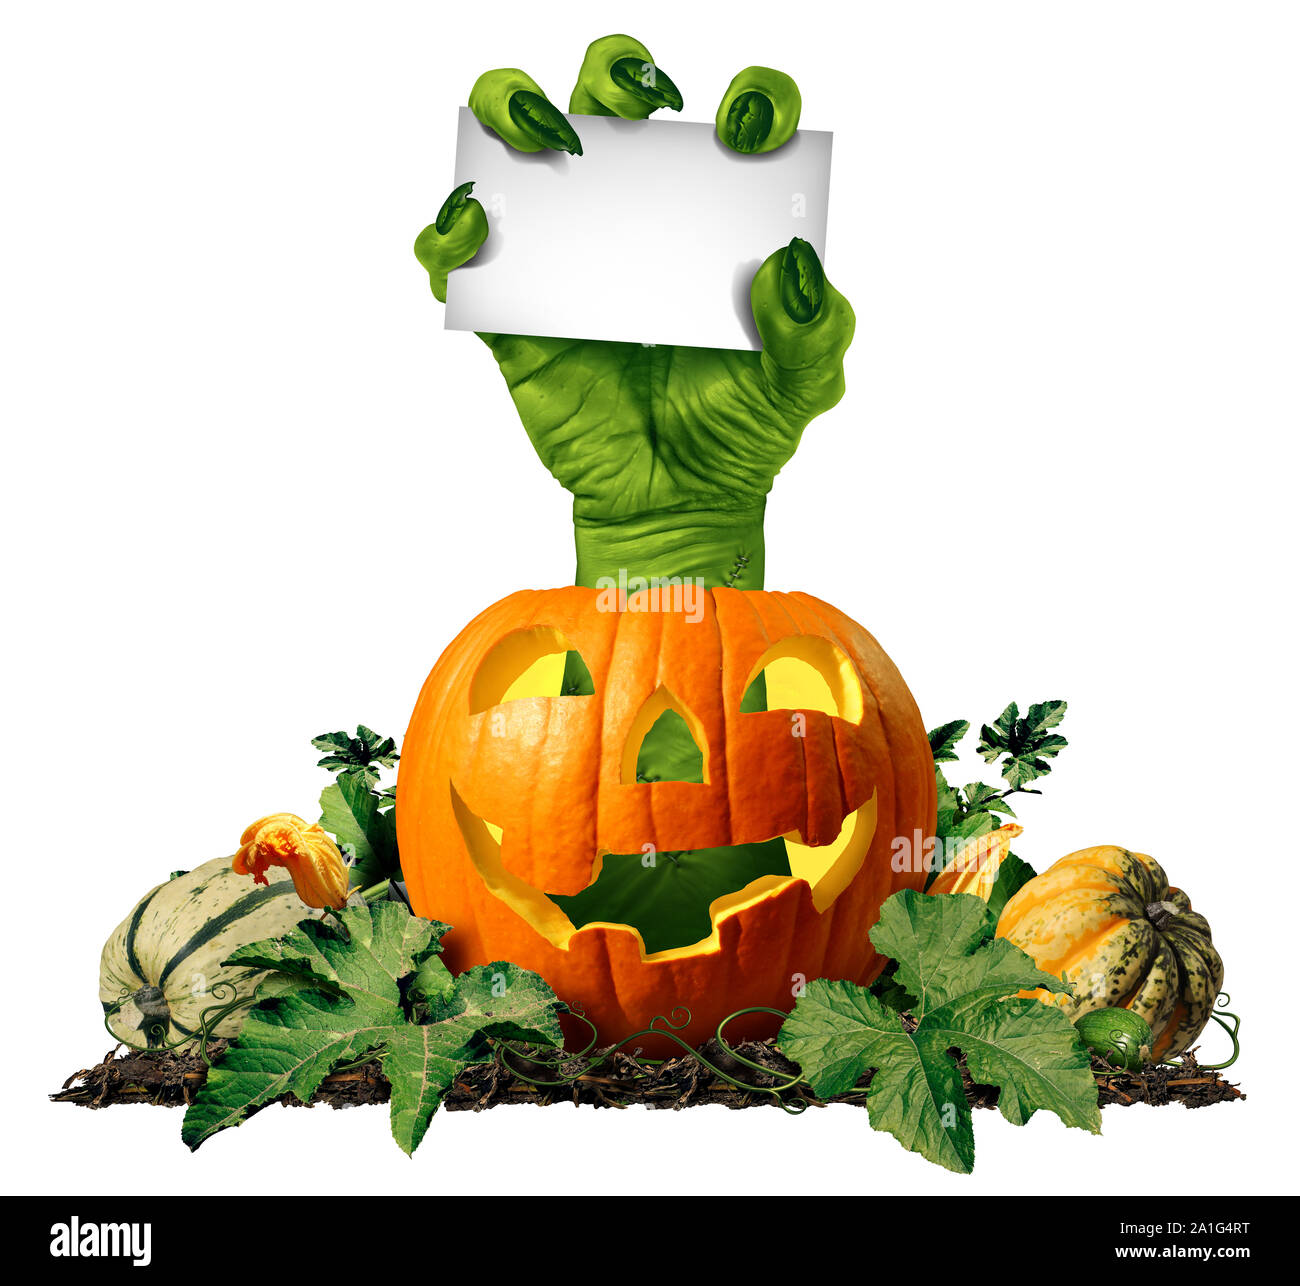 Zombie hand holding a blank sign card comme un symbole effrayant ou halloween creepy avec texture peau verte ridée monster doigts à partir d'une citrouille. Banque D'Images